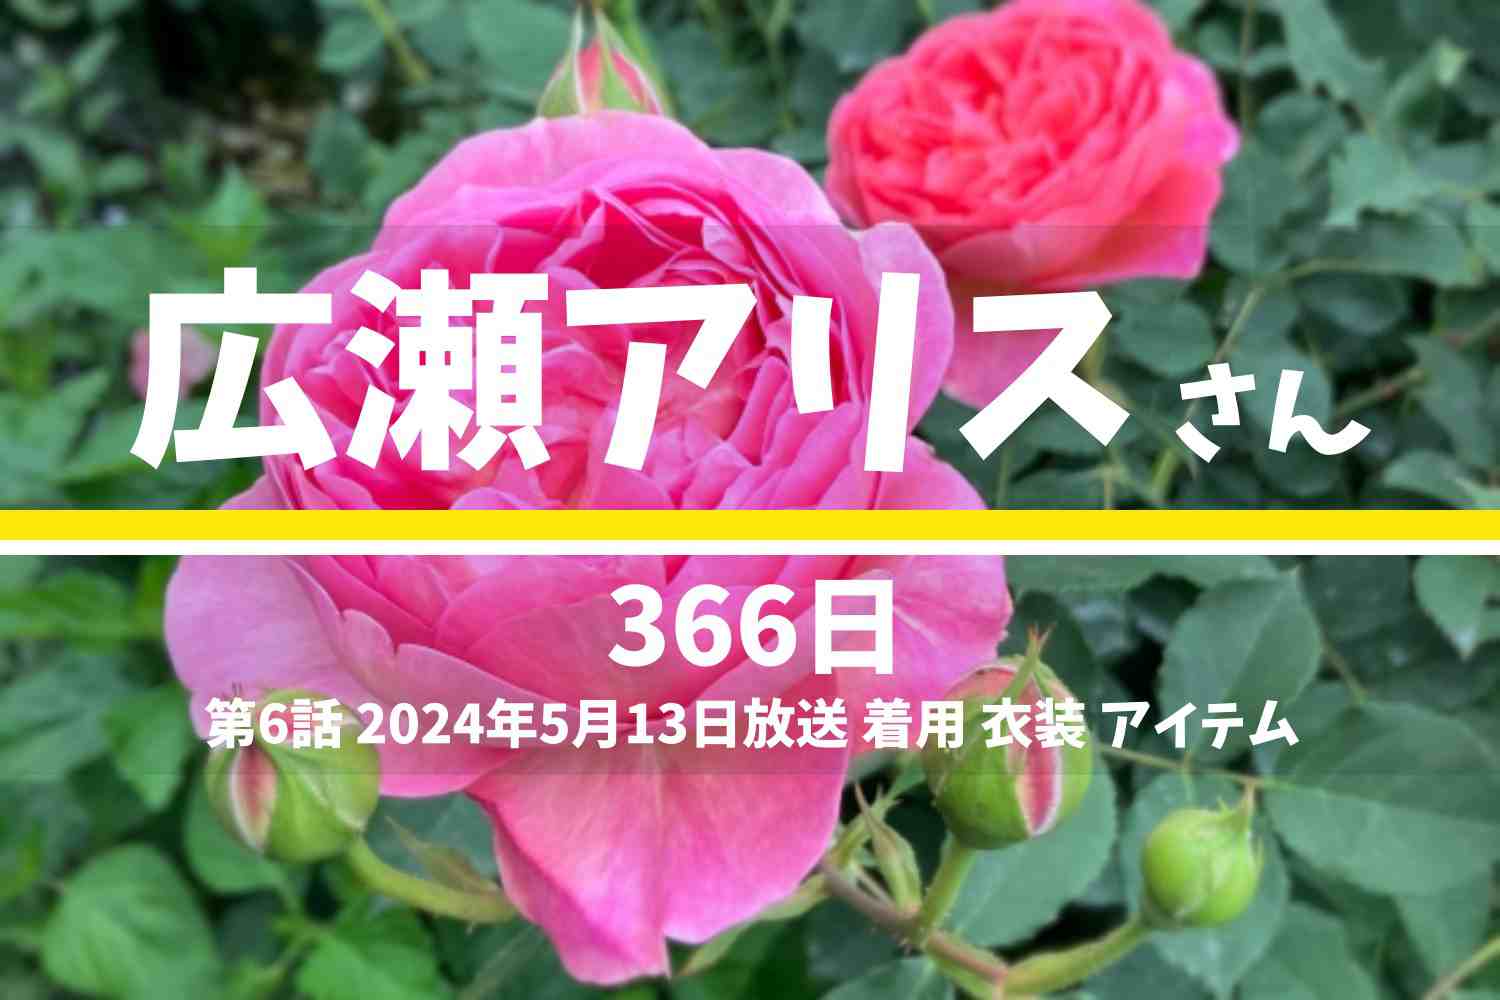 366日 広瀬アリスさん テレビドラマ 衣装 2024年5月13日放送